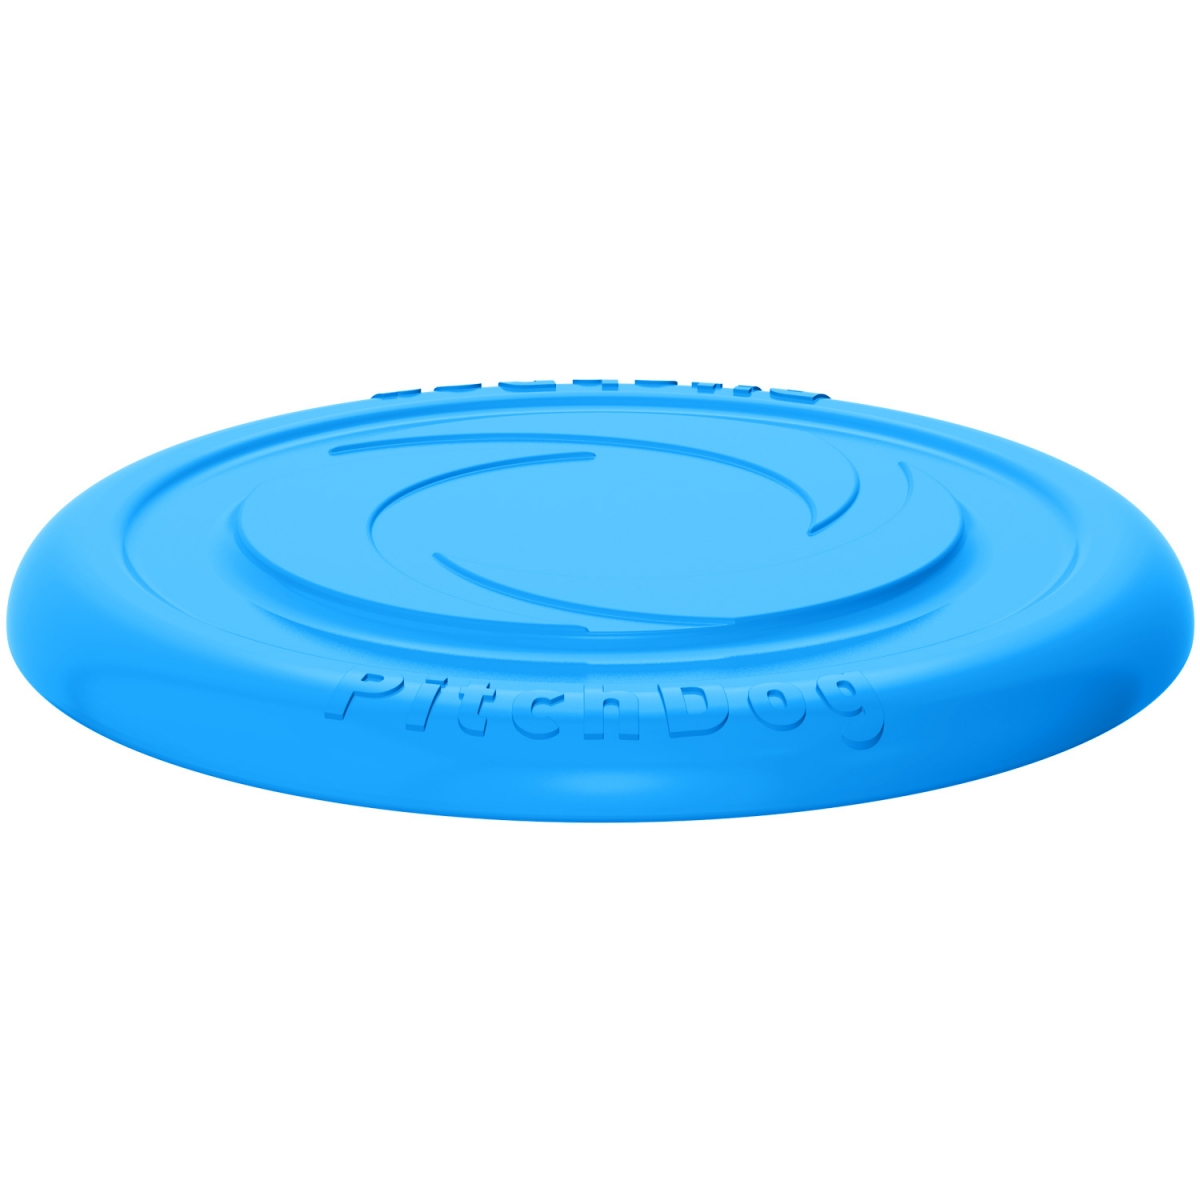 PitchDog – latający dysk dla gier i treningów, Błękitny